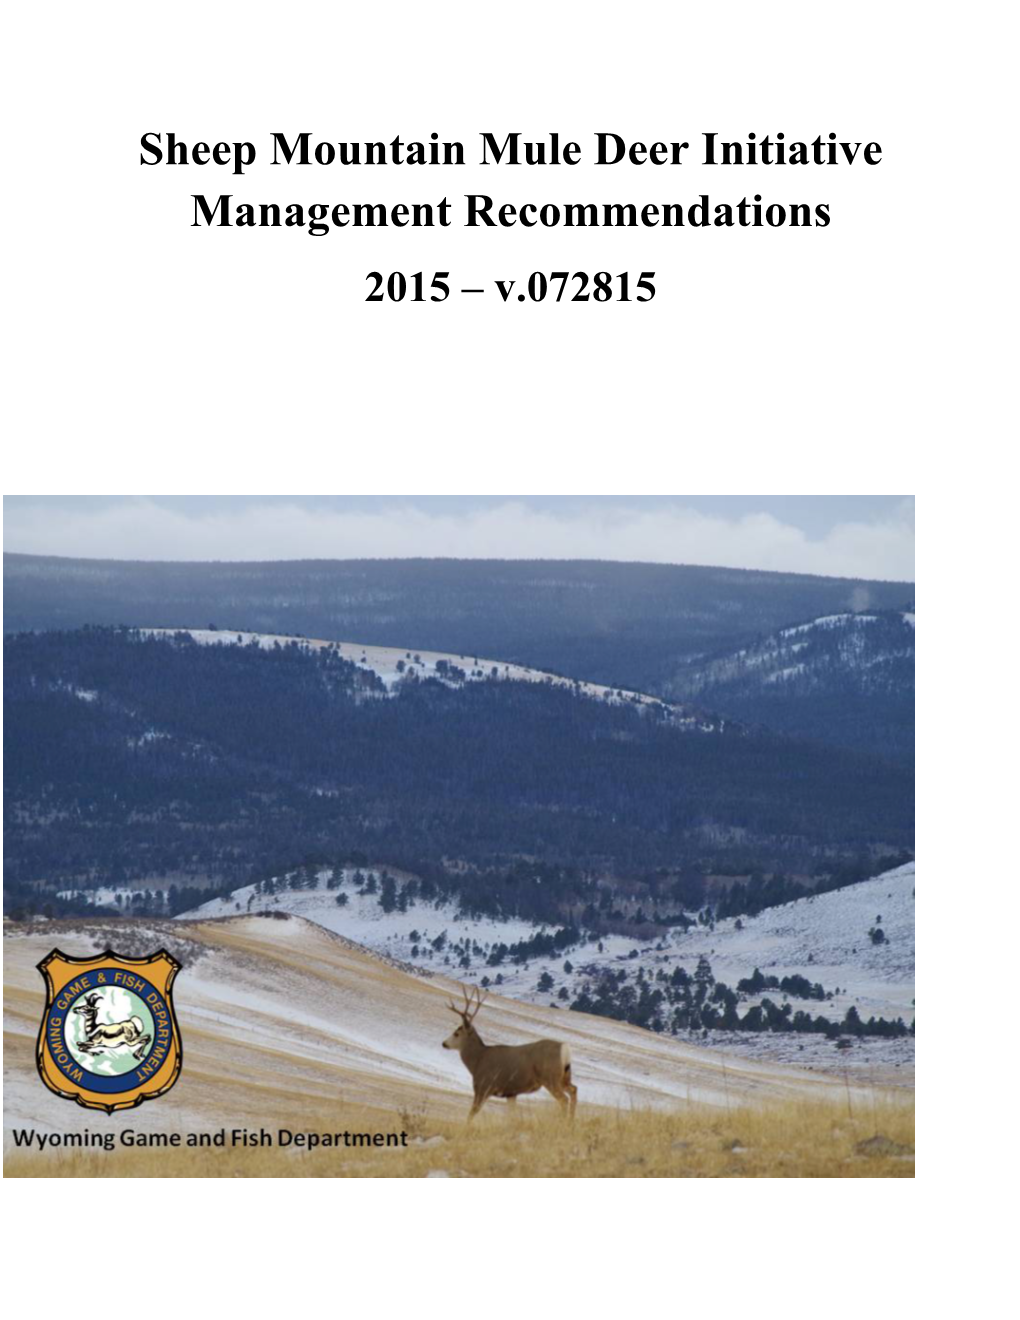 Sheep Mountain Mule Deer Management Plan